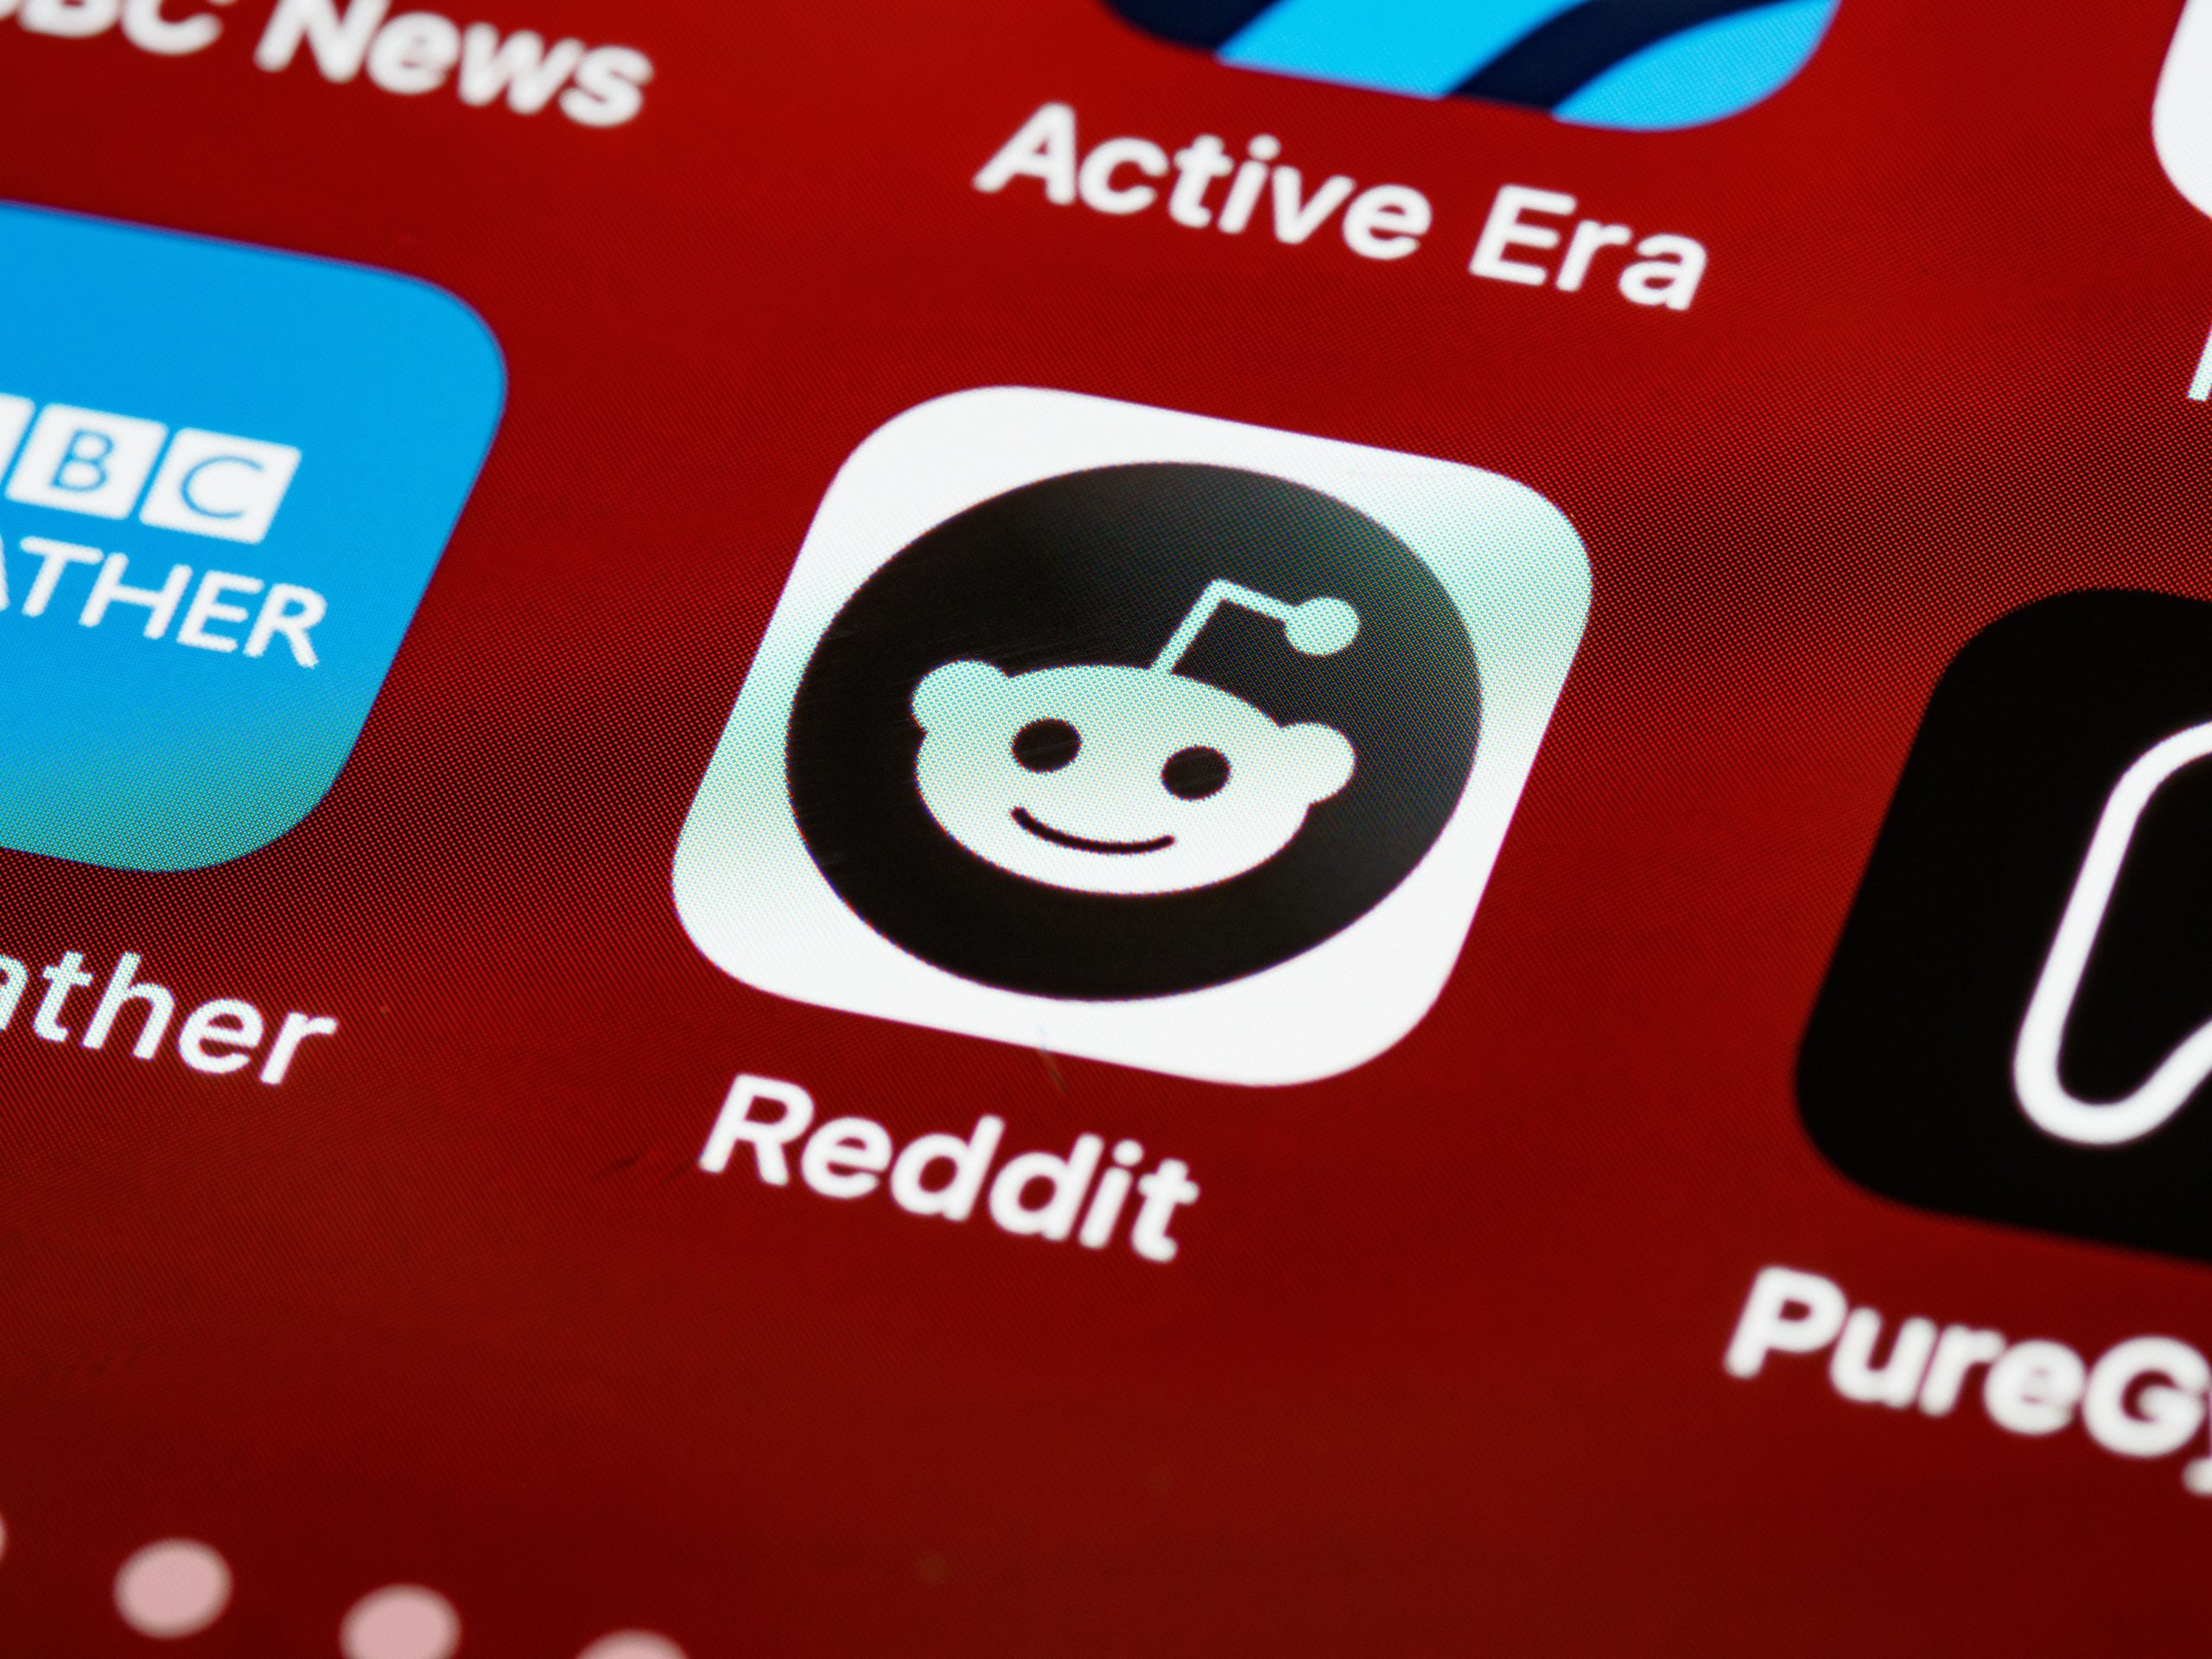 Reddit Testing Desktop UI Changes Ahead of Its IPO